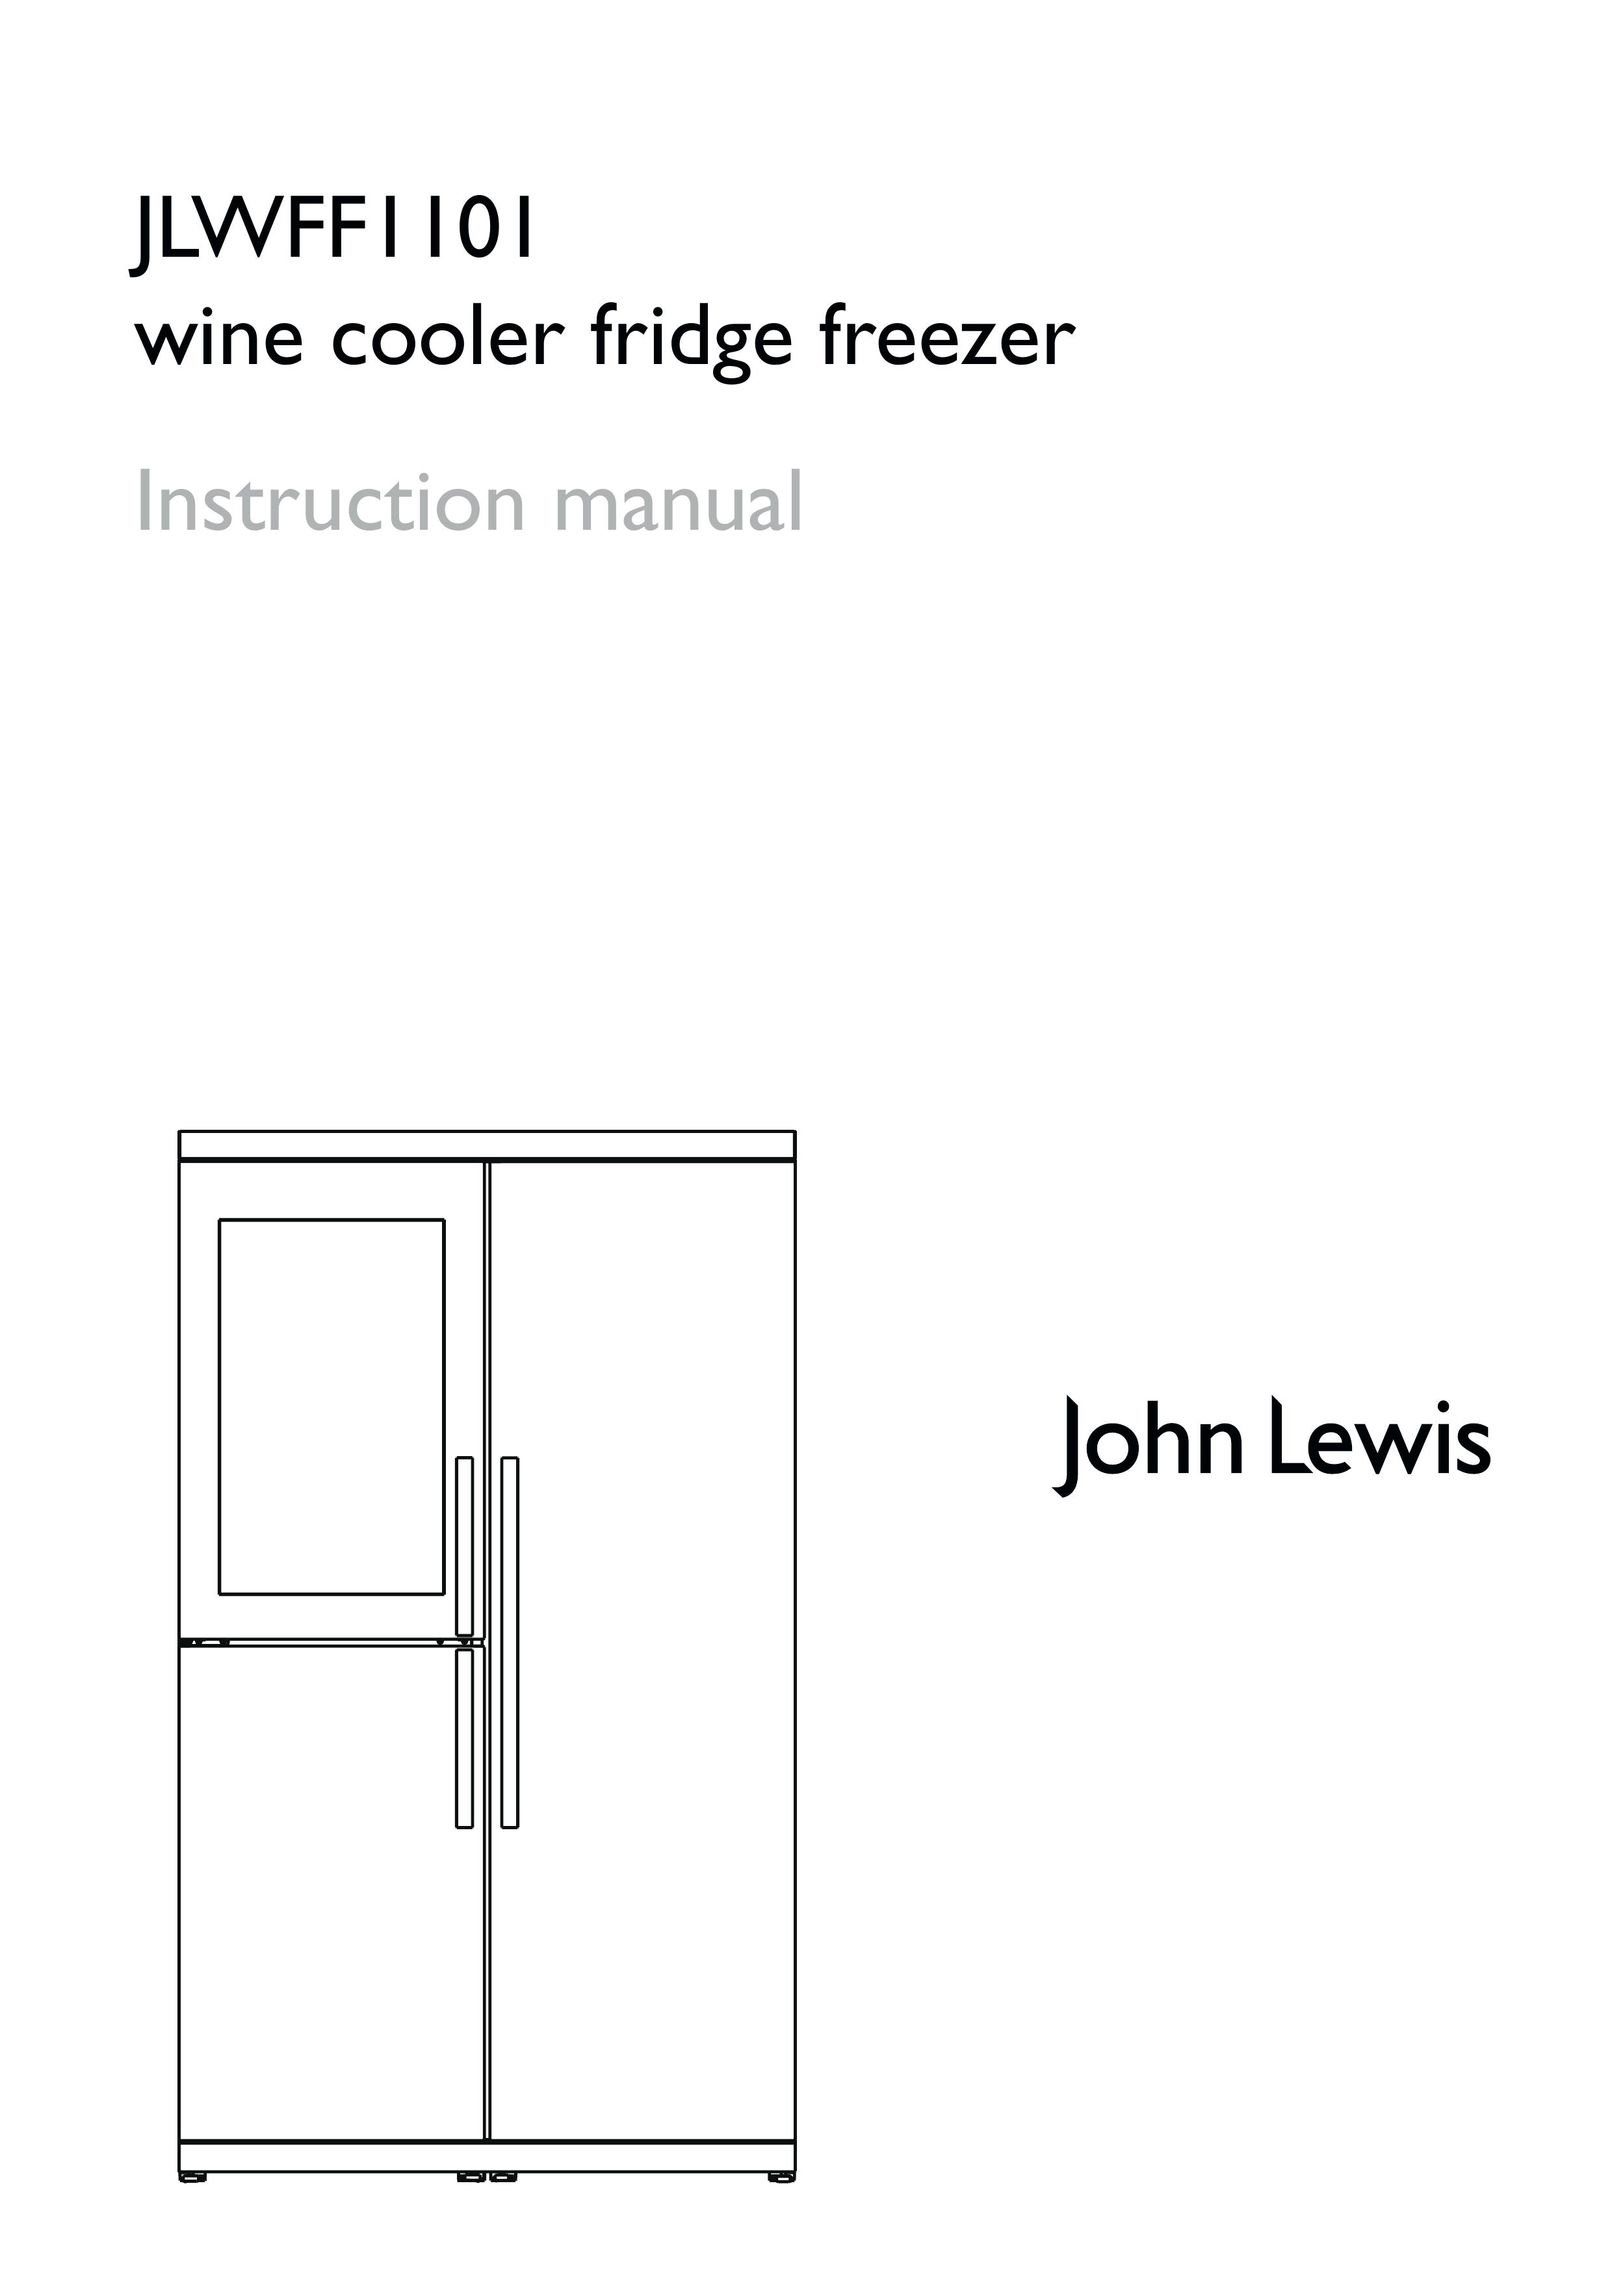 John Lewis JLWFF1101 Freezer User Manual